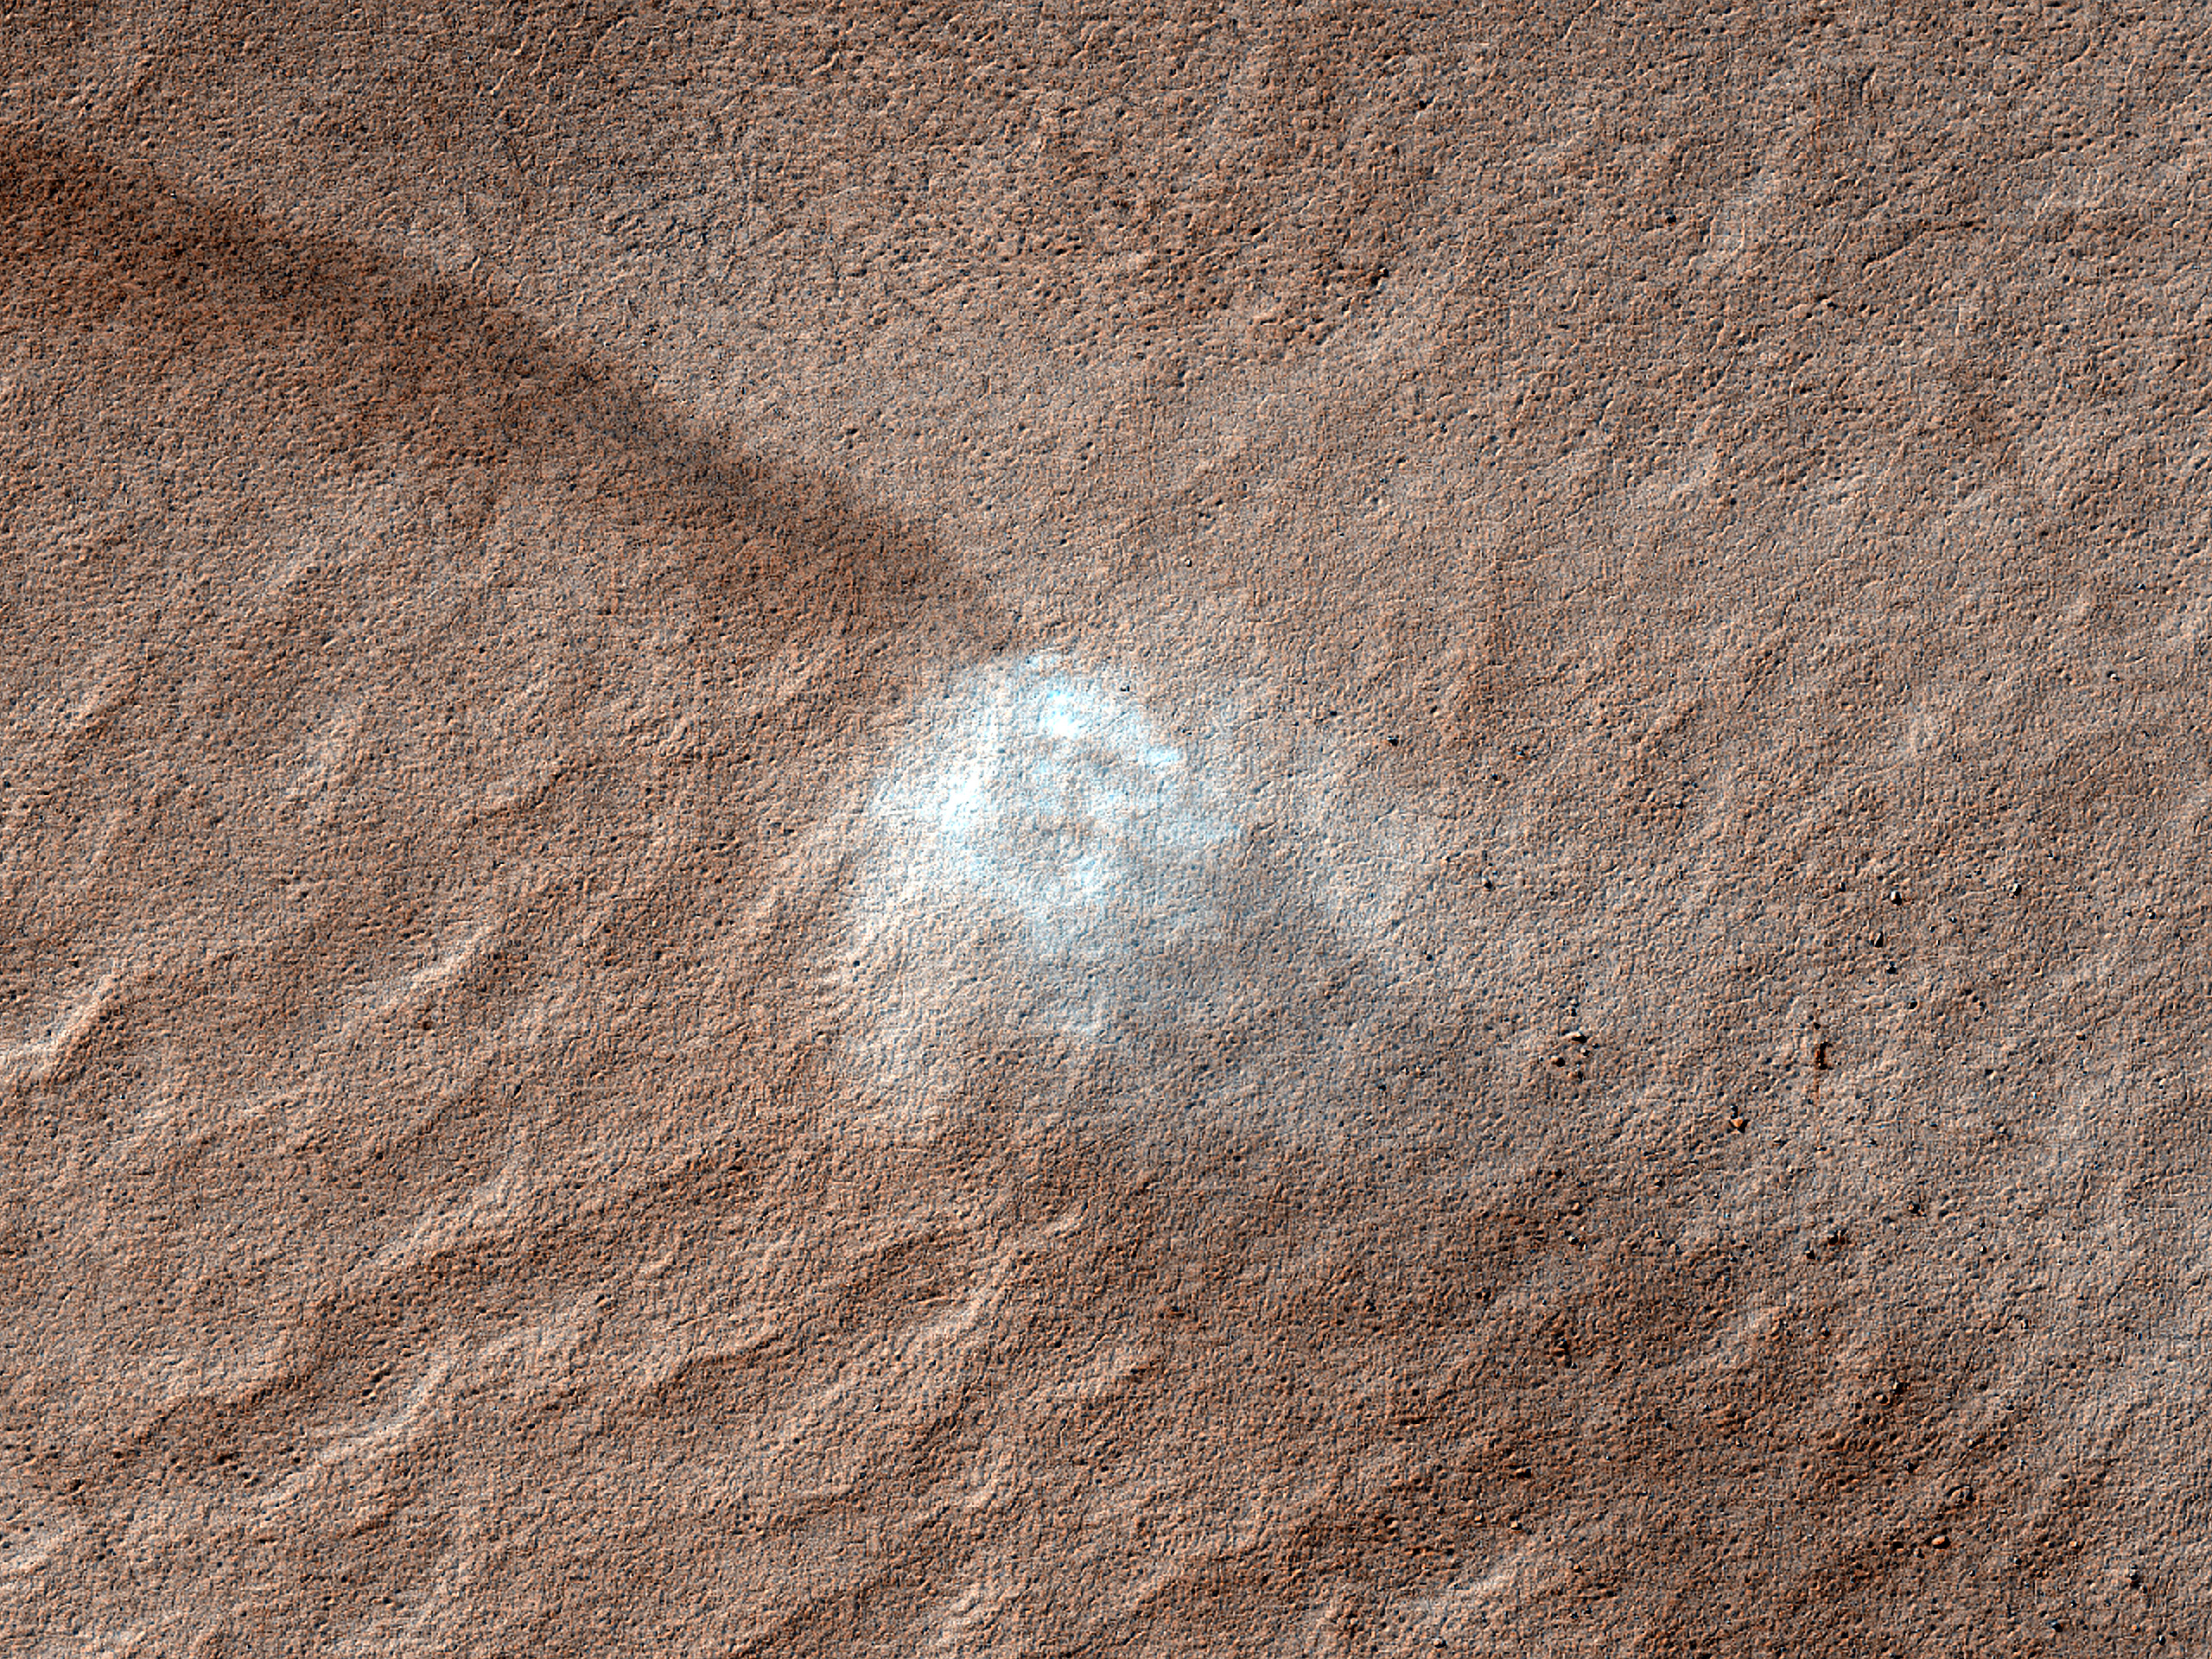 Remolinos en Marte! Un vrtice en espiral